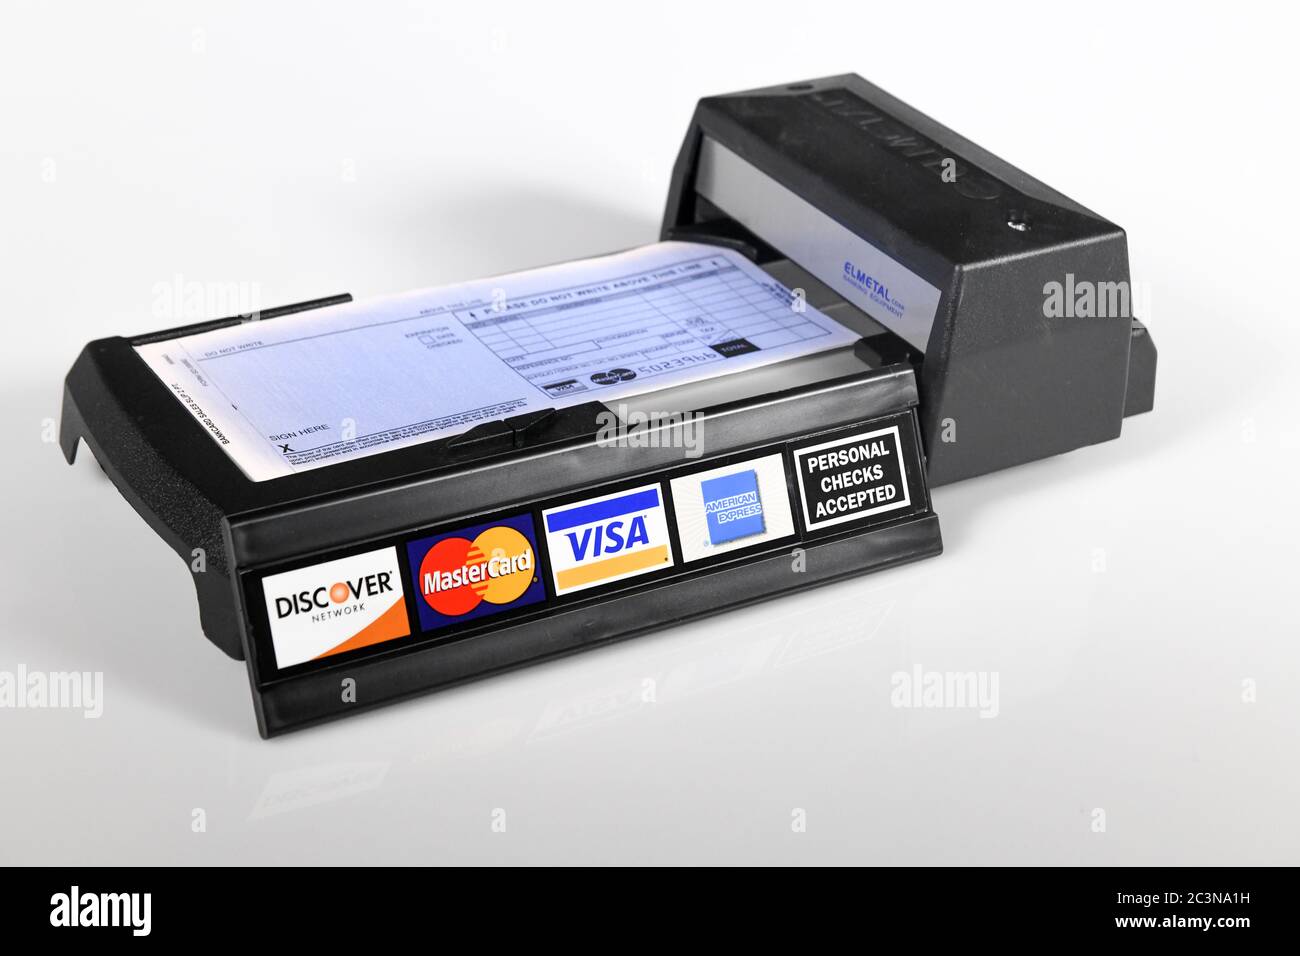 Macchina manuale per carte di credito - vecchia tecnologia - stampante manuale per carte di credito con logo di carte di credito - segno di spunta personale Foto Stock